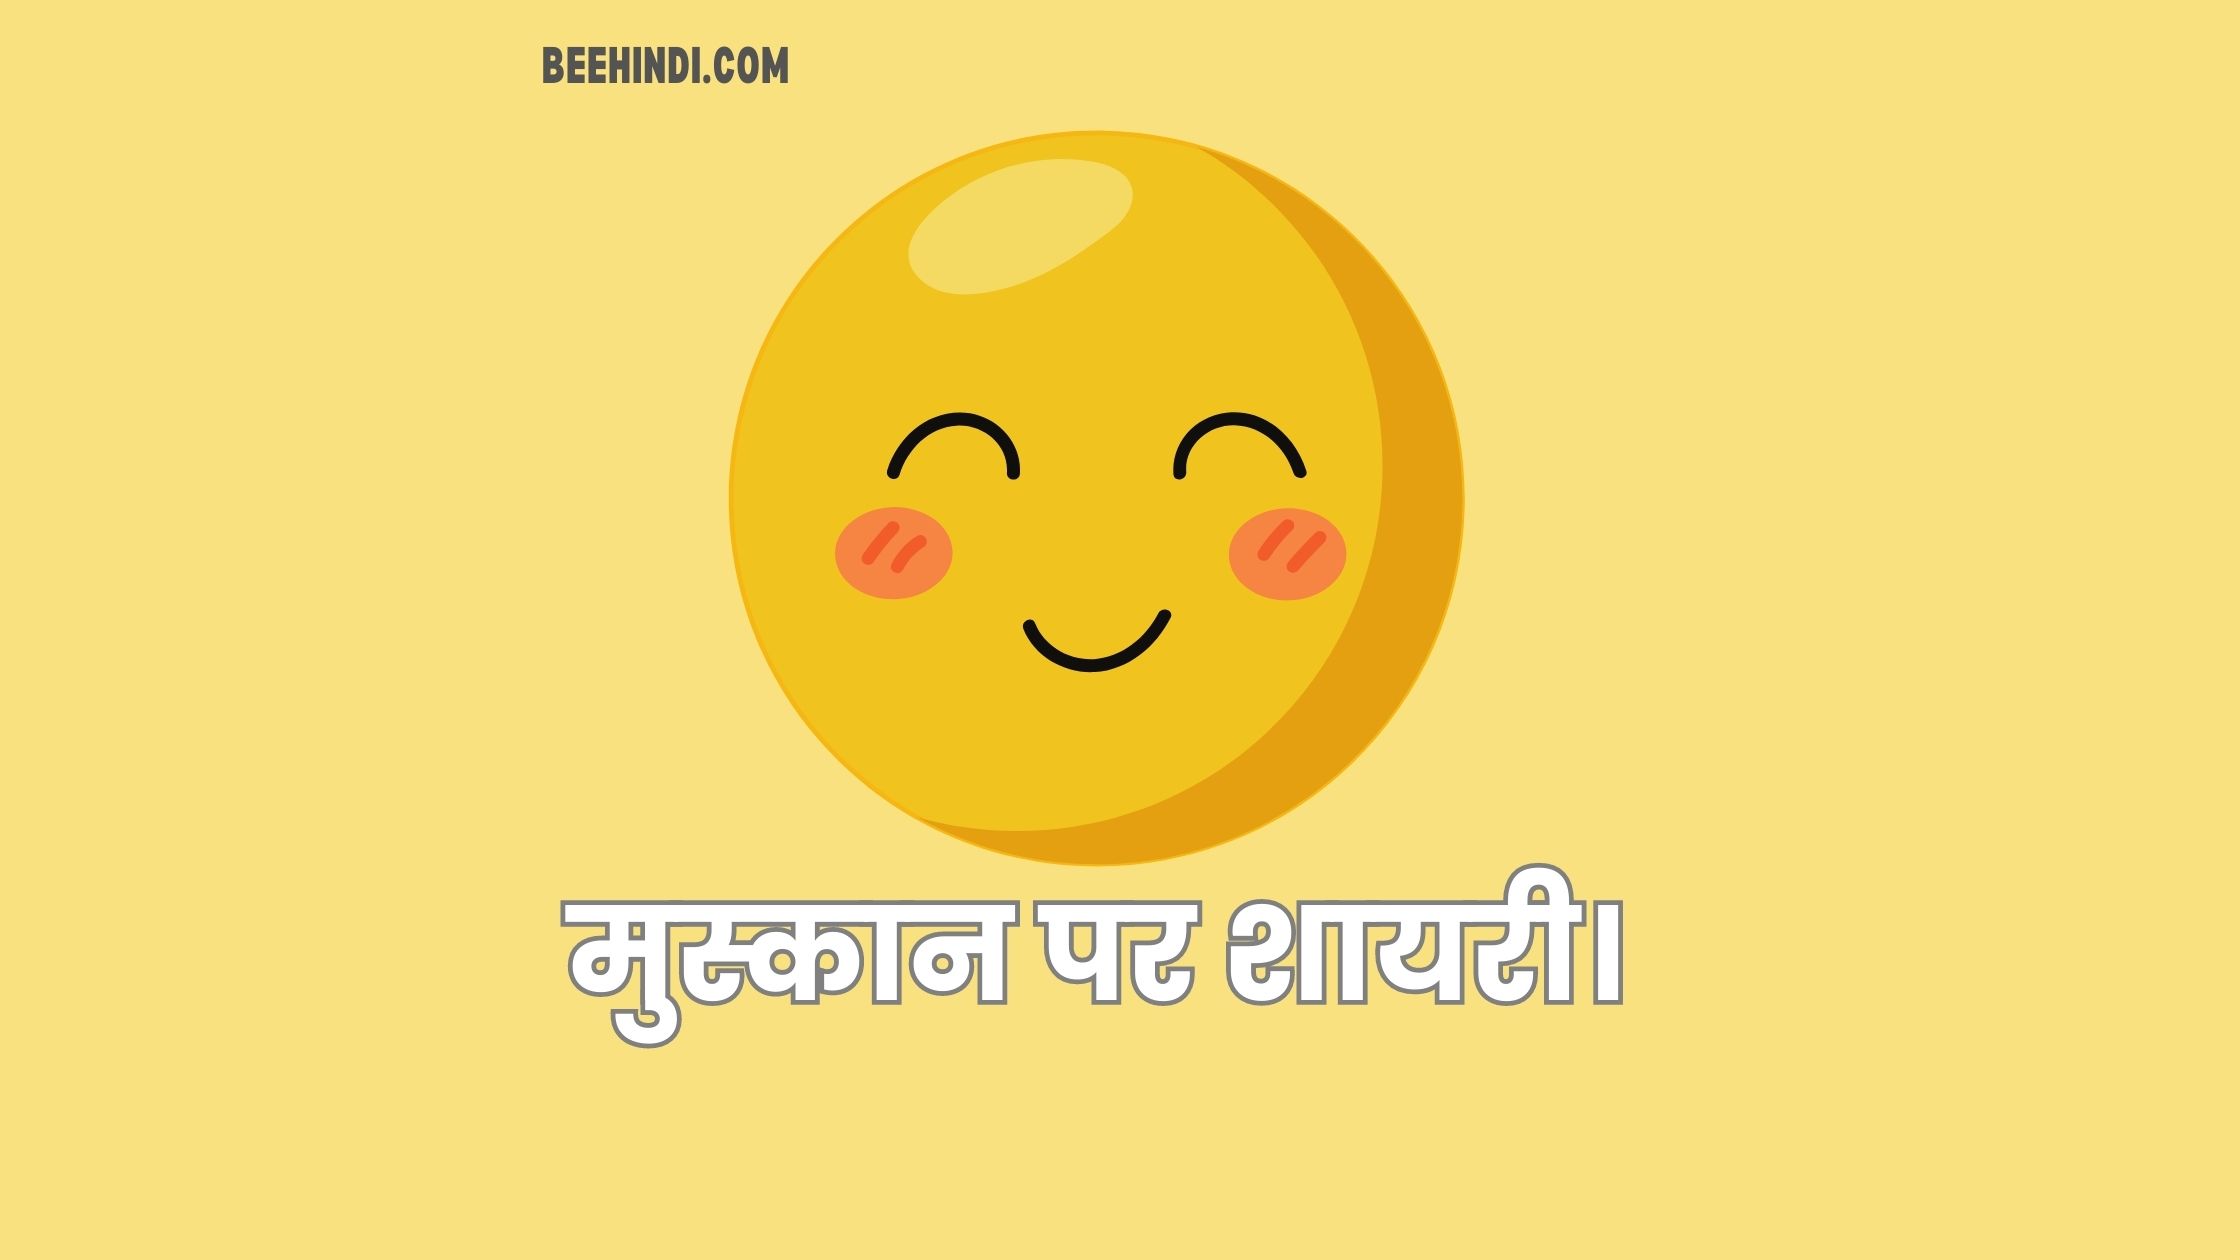 मुस्कान पर शायरी हिंदी में। – Shayari on Smile in Hindi.